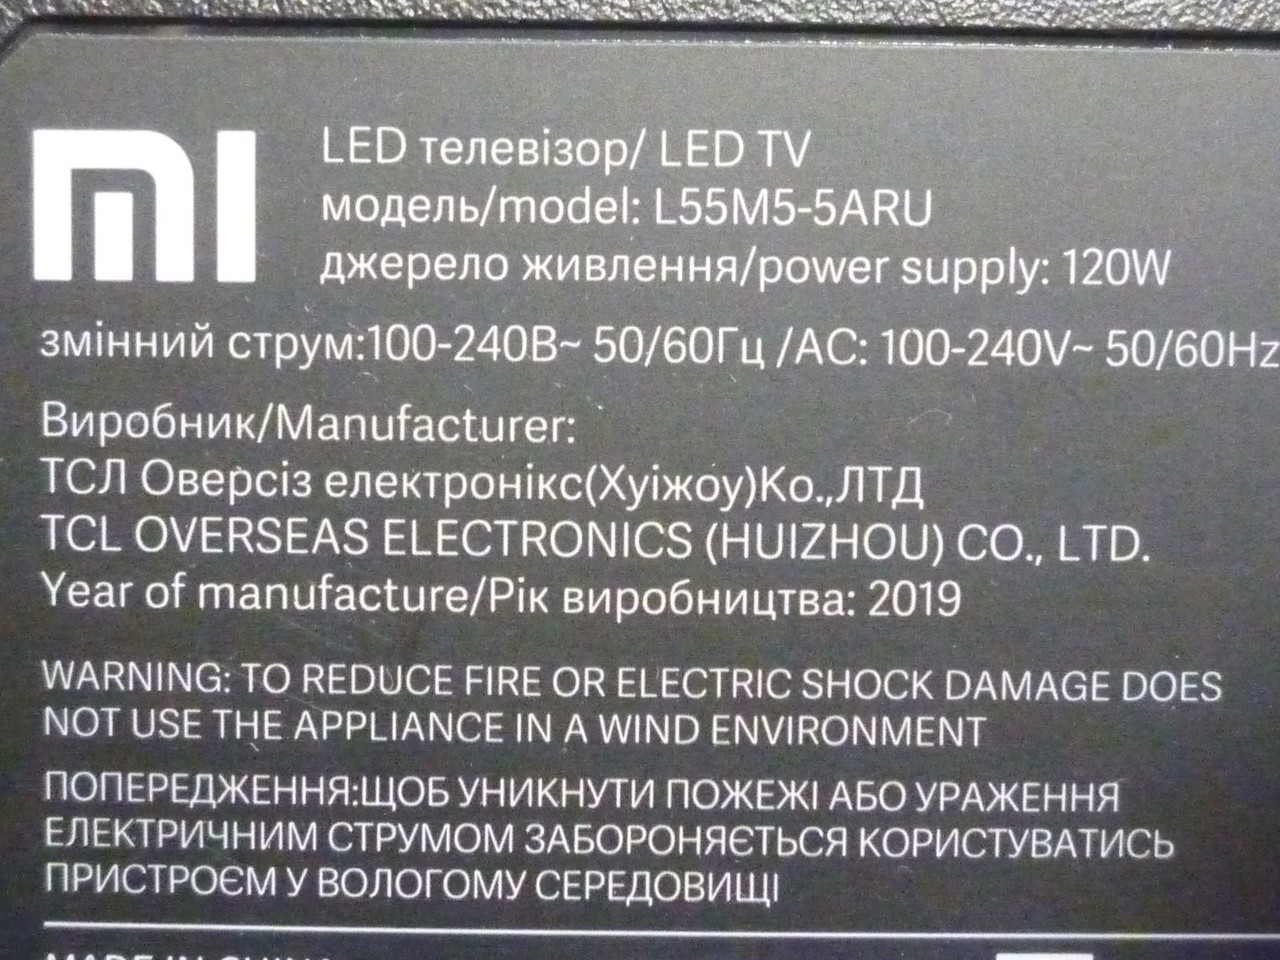 Плата T-Con ST5461D07-7-C-3, плата WI-FI WF-M668-UWP1(B) від LЕD телевізора Xiaomi L55M5-5ARU